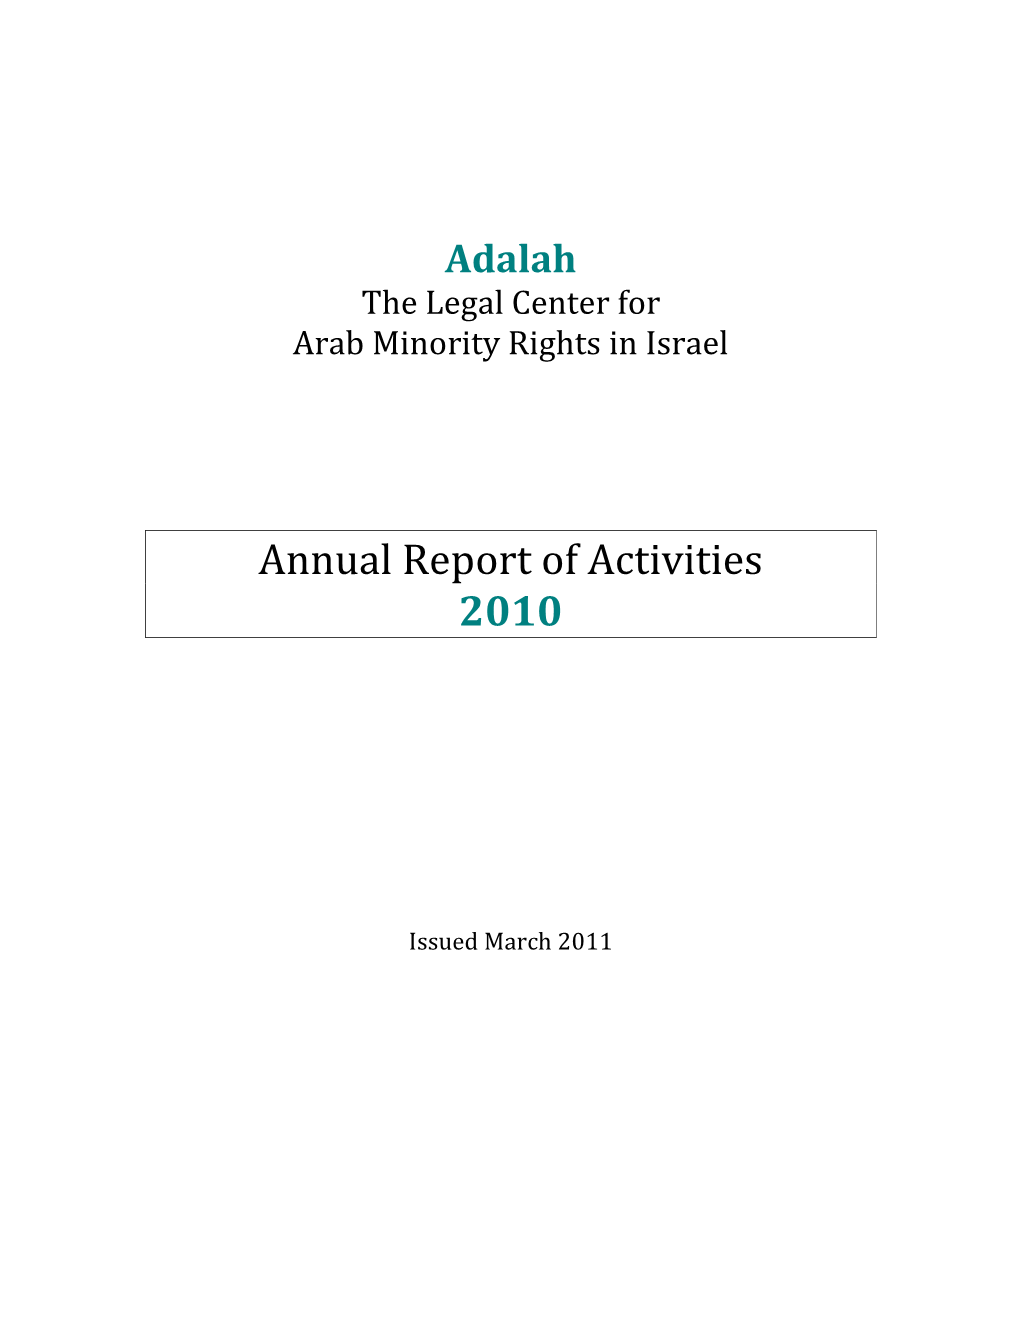 Adalah's Annual Report of Activities 2010